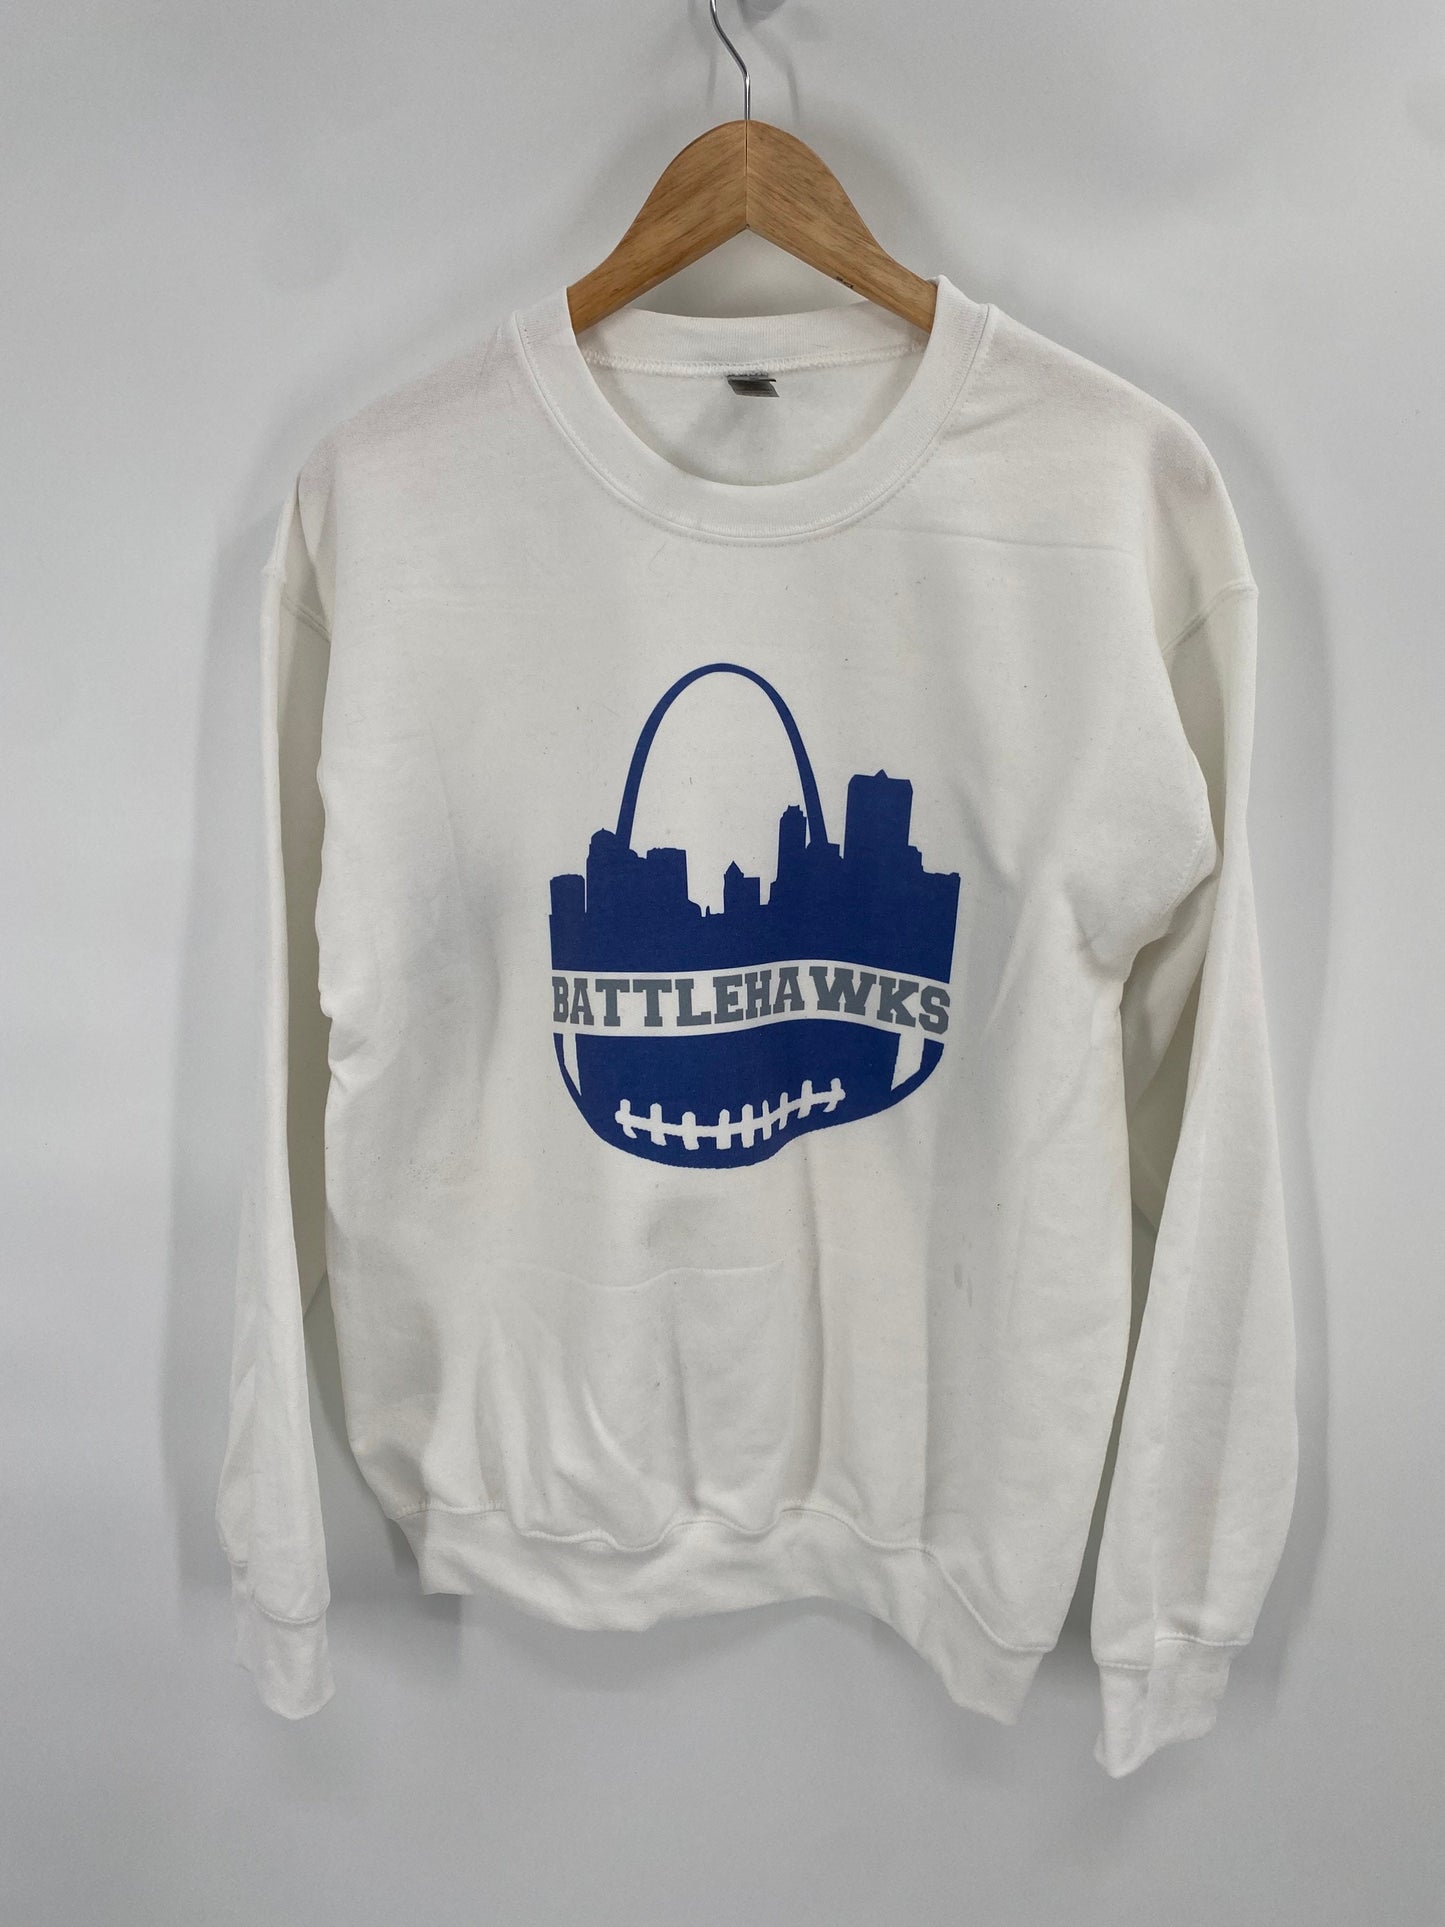 Saint Louis Battlehawks sweatshirt